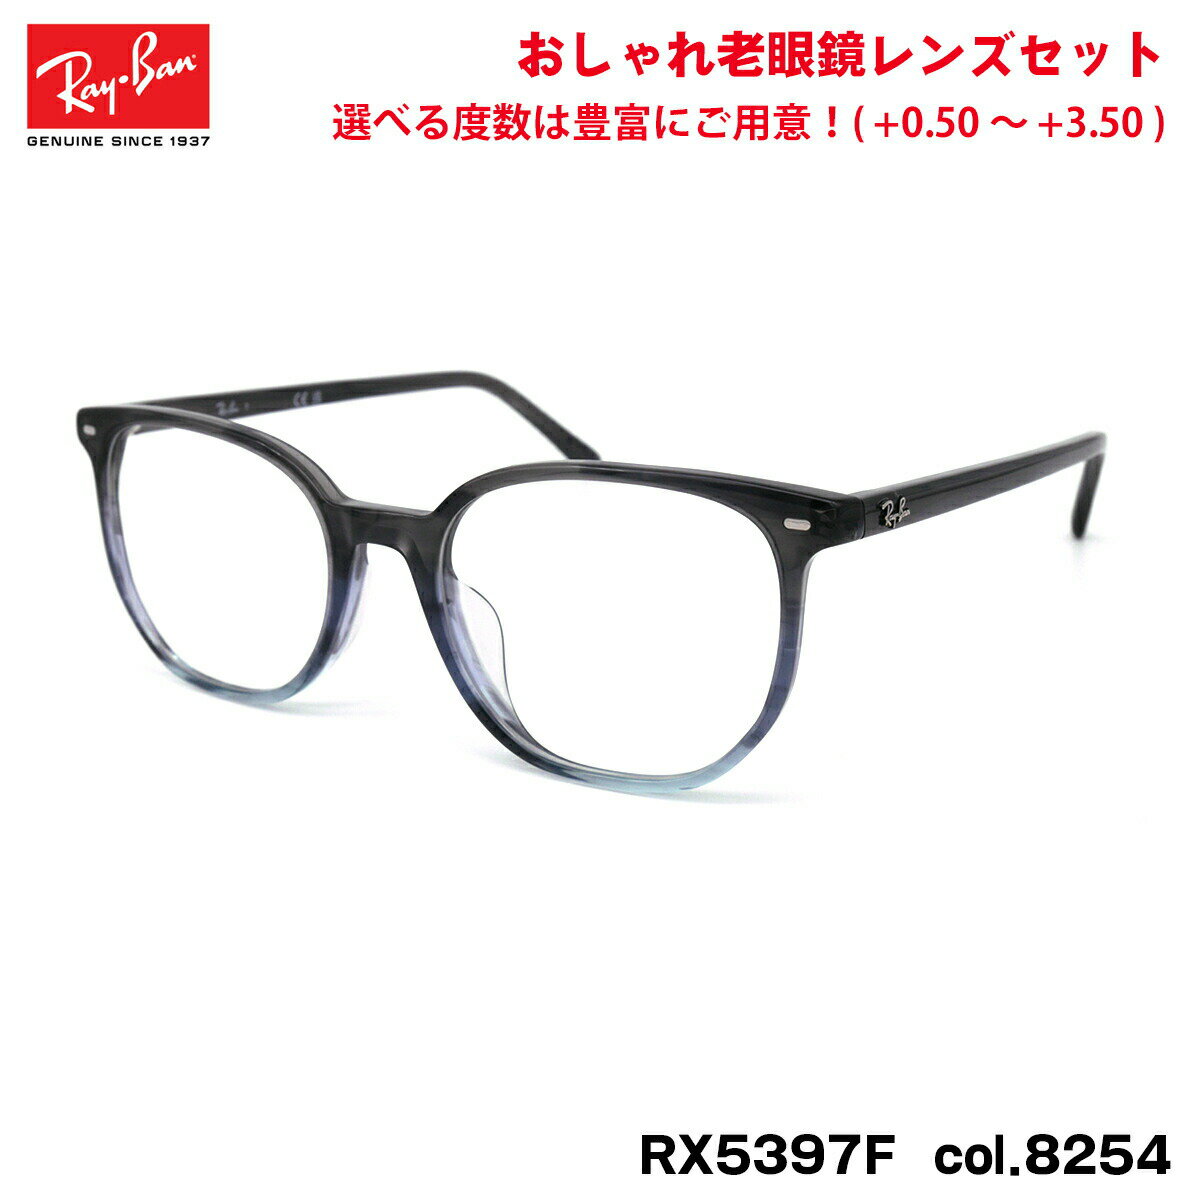 レイバン 老眼鏡 RX5397F (RB5397F) 8254 52mm Ray-Ban ELLIOT エリオット アジアンフィット UVカット ブルーライトカット